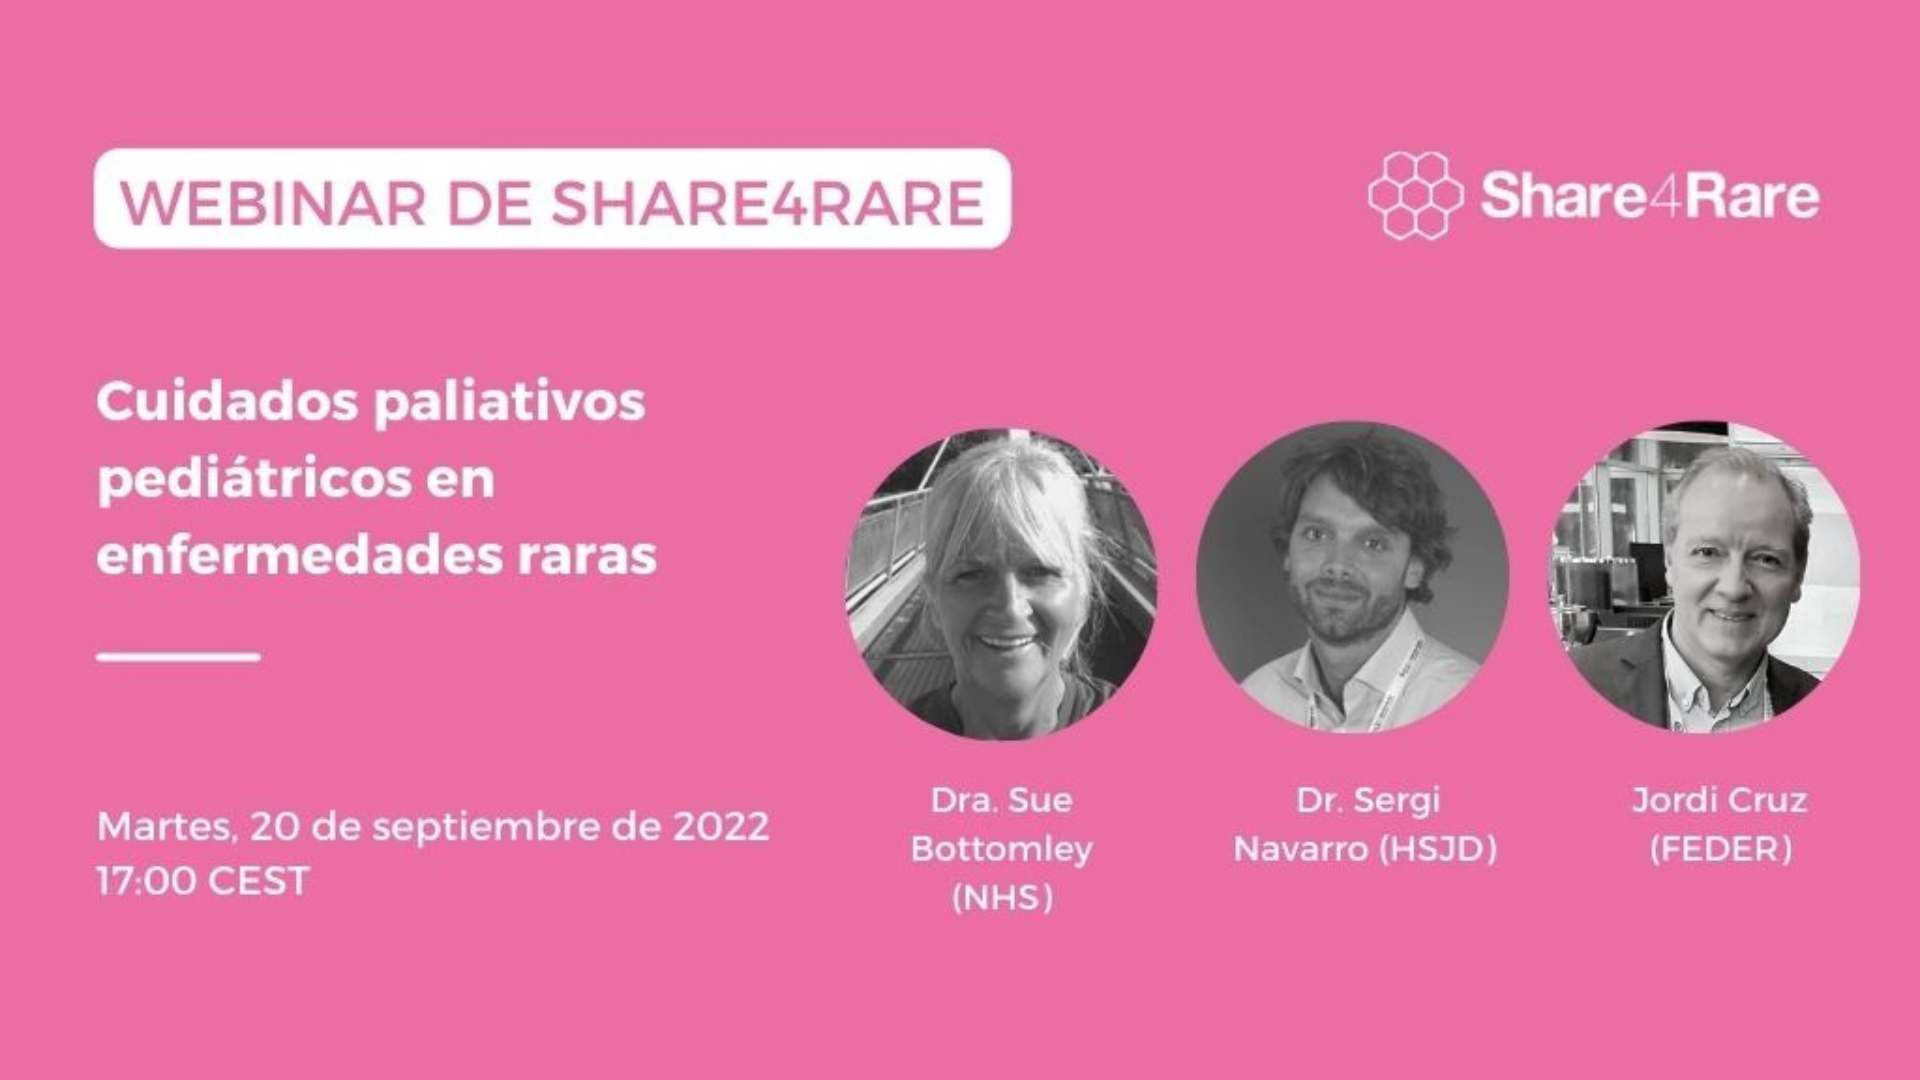 Sobre fondo rosa, aparecen de izquierda a derecha las fotografías de la Doctora Sue Bottomley, del doctor Sergi Navarro y de Jordi Cruz, en representación de FEDER